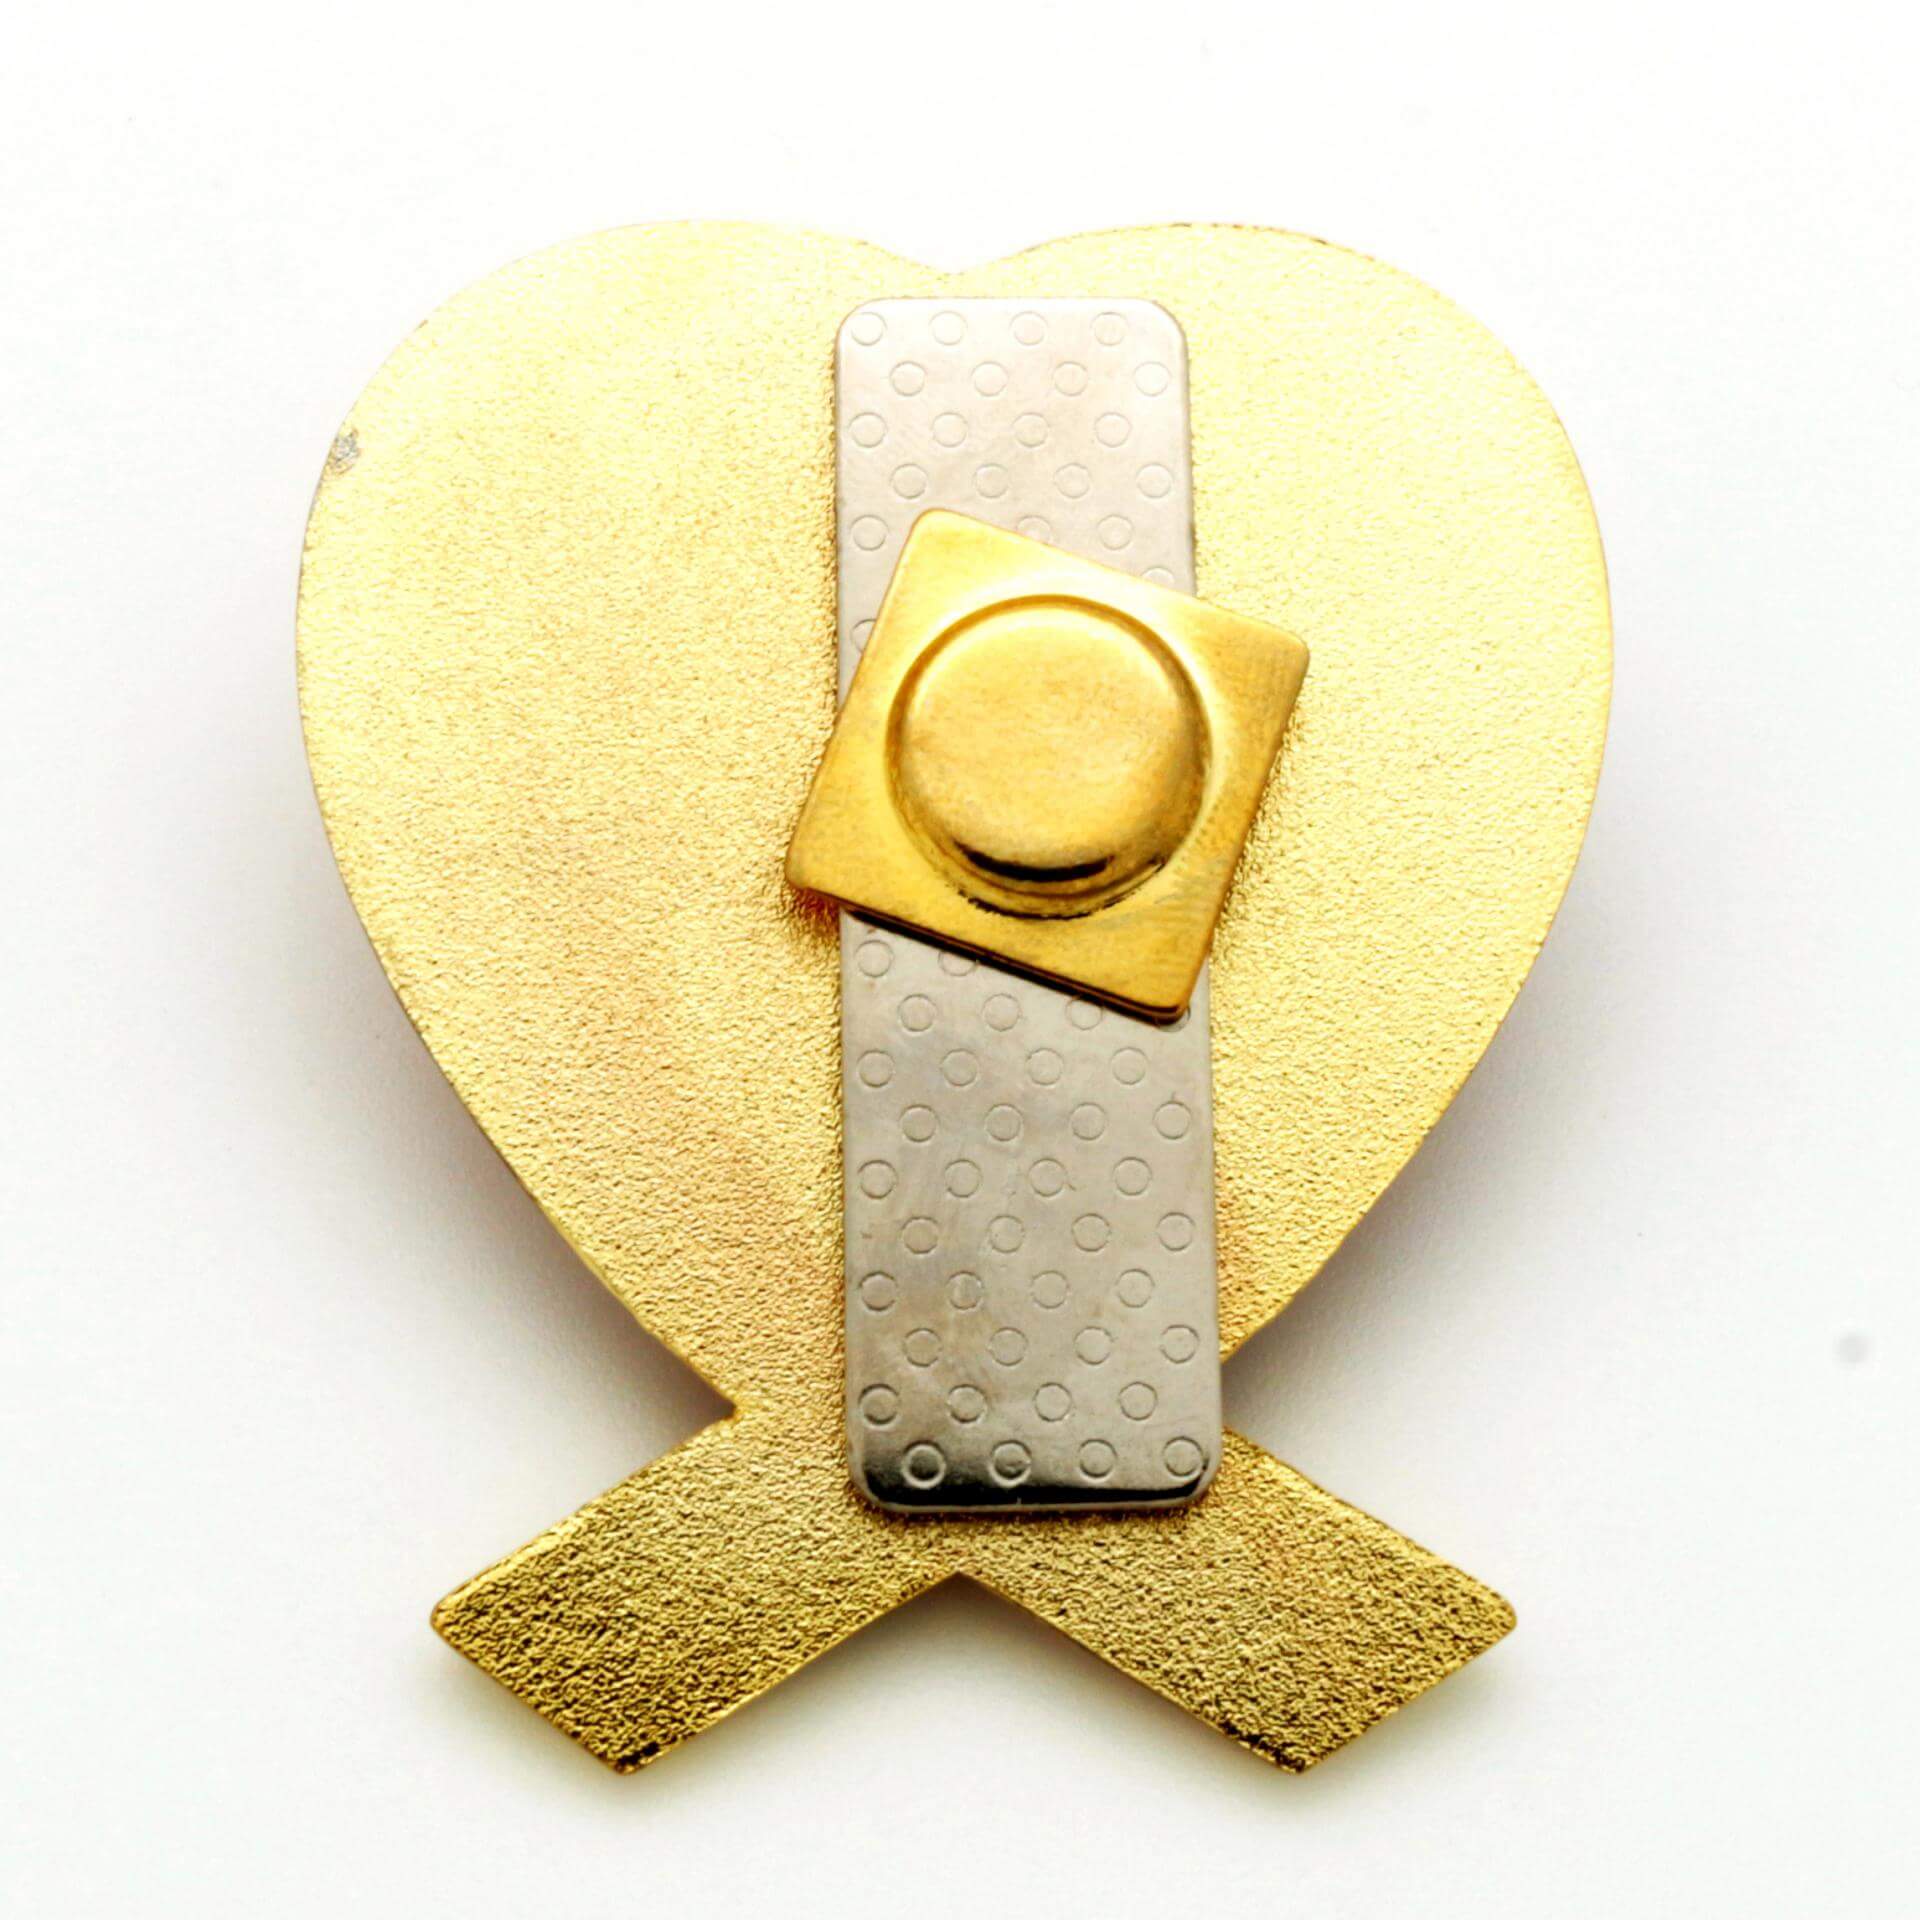 Metal Soft Enamel Badge Pin Souvenirs